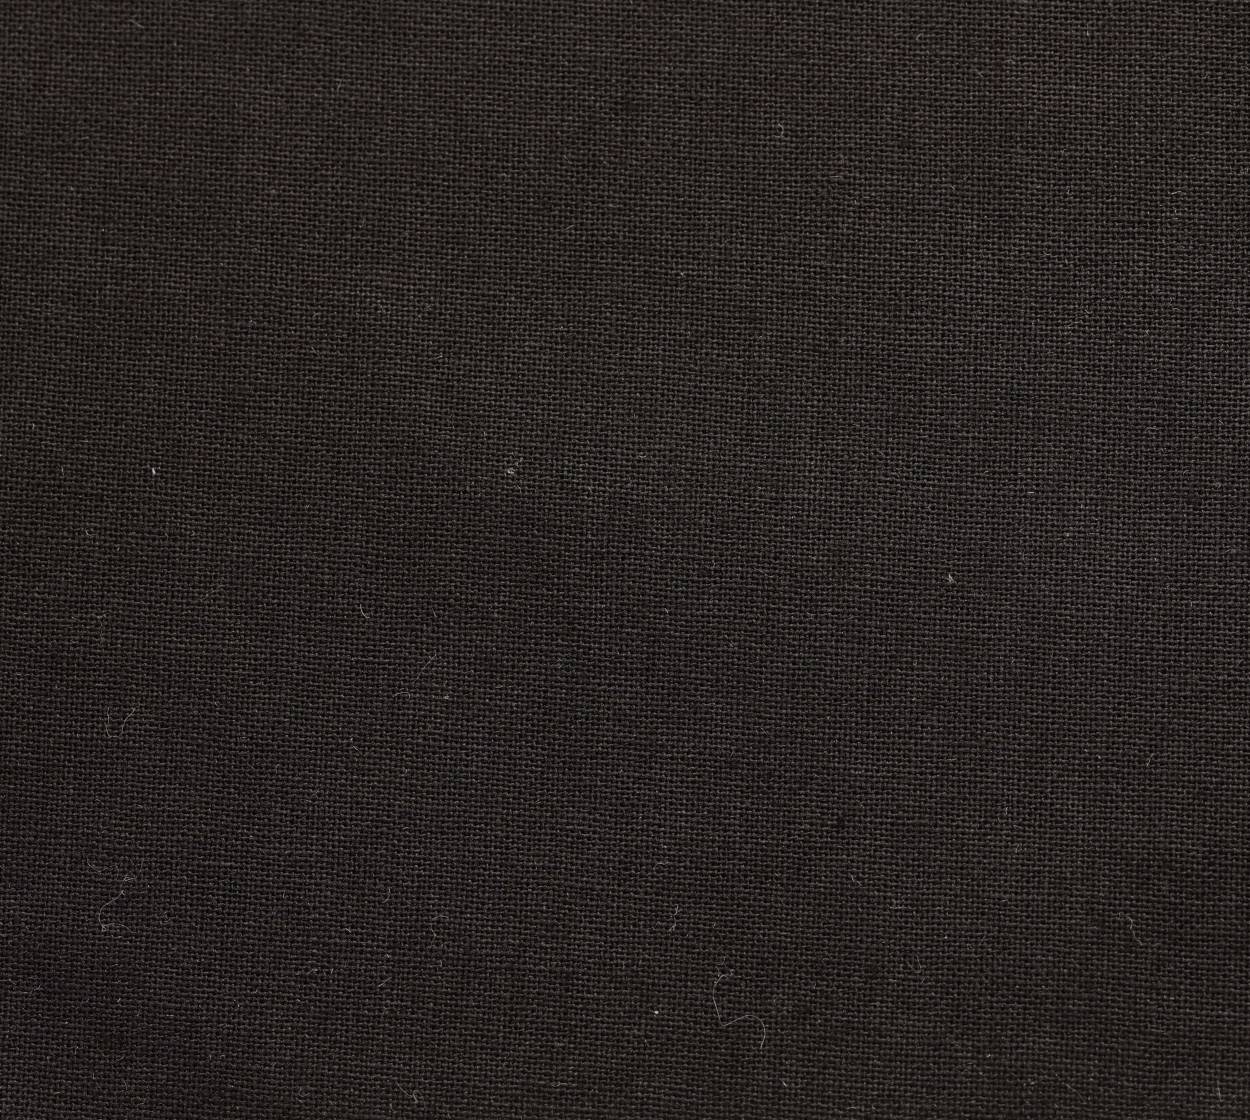 Nessel Baumwolle, schwarz 347, 6,20 m breit, 6N59 im Stamm online Store München